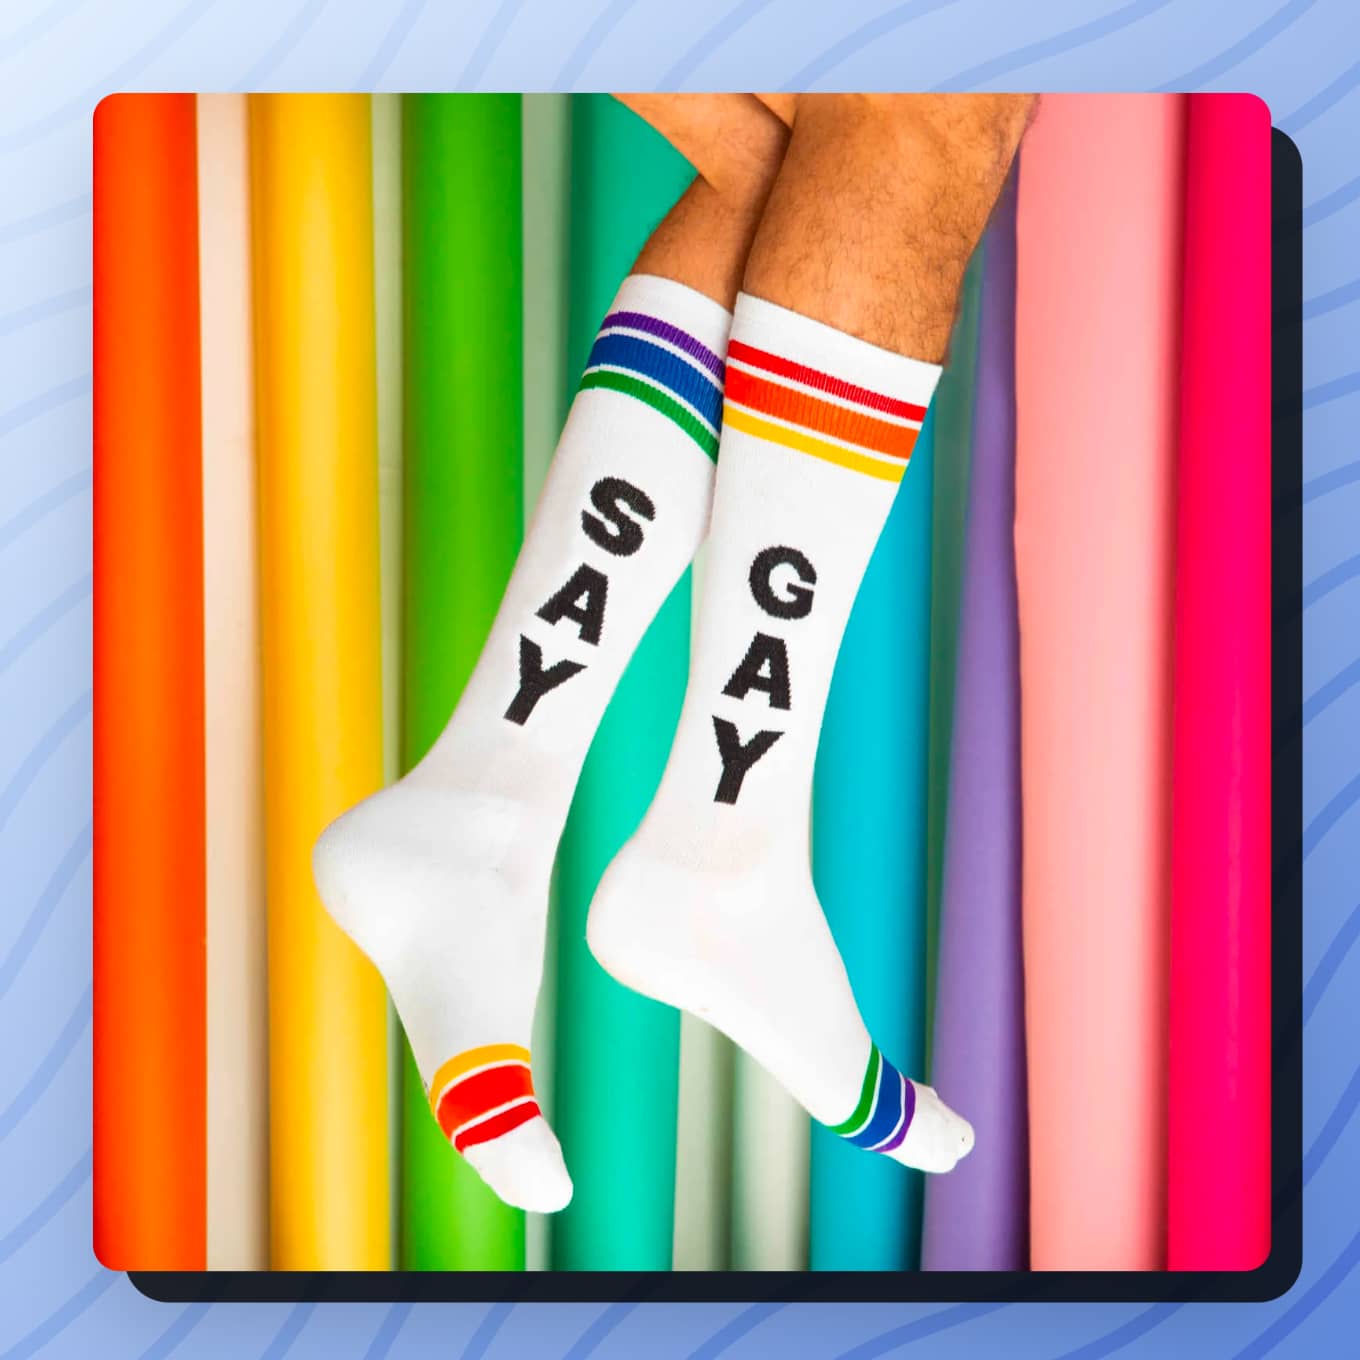 Een sok met zeg Zeg en een andere sok met de tekst Gay